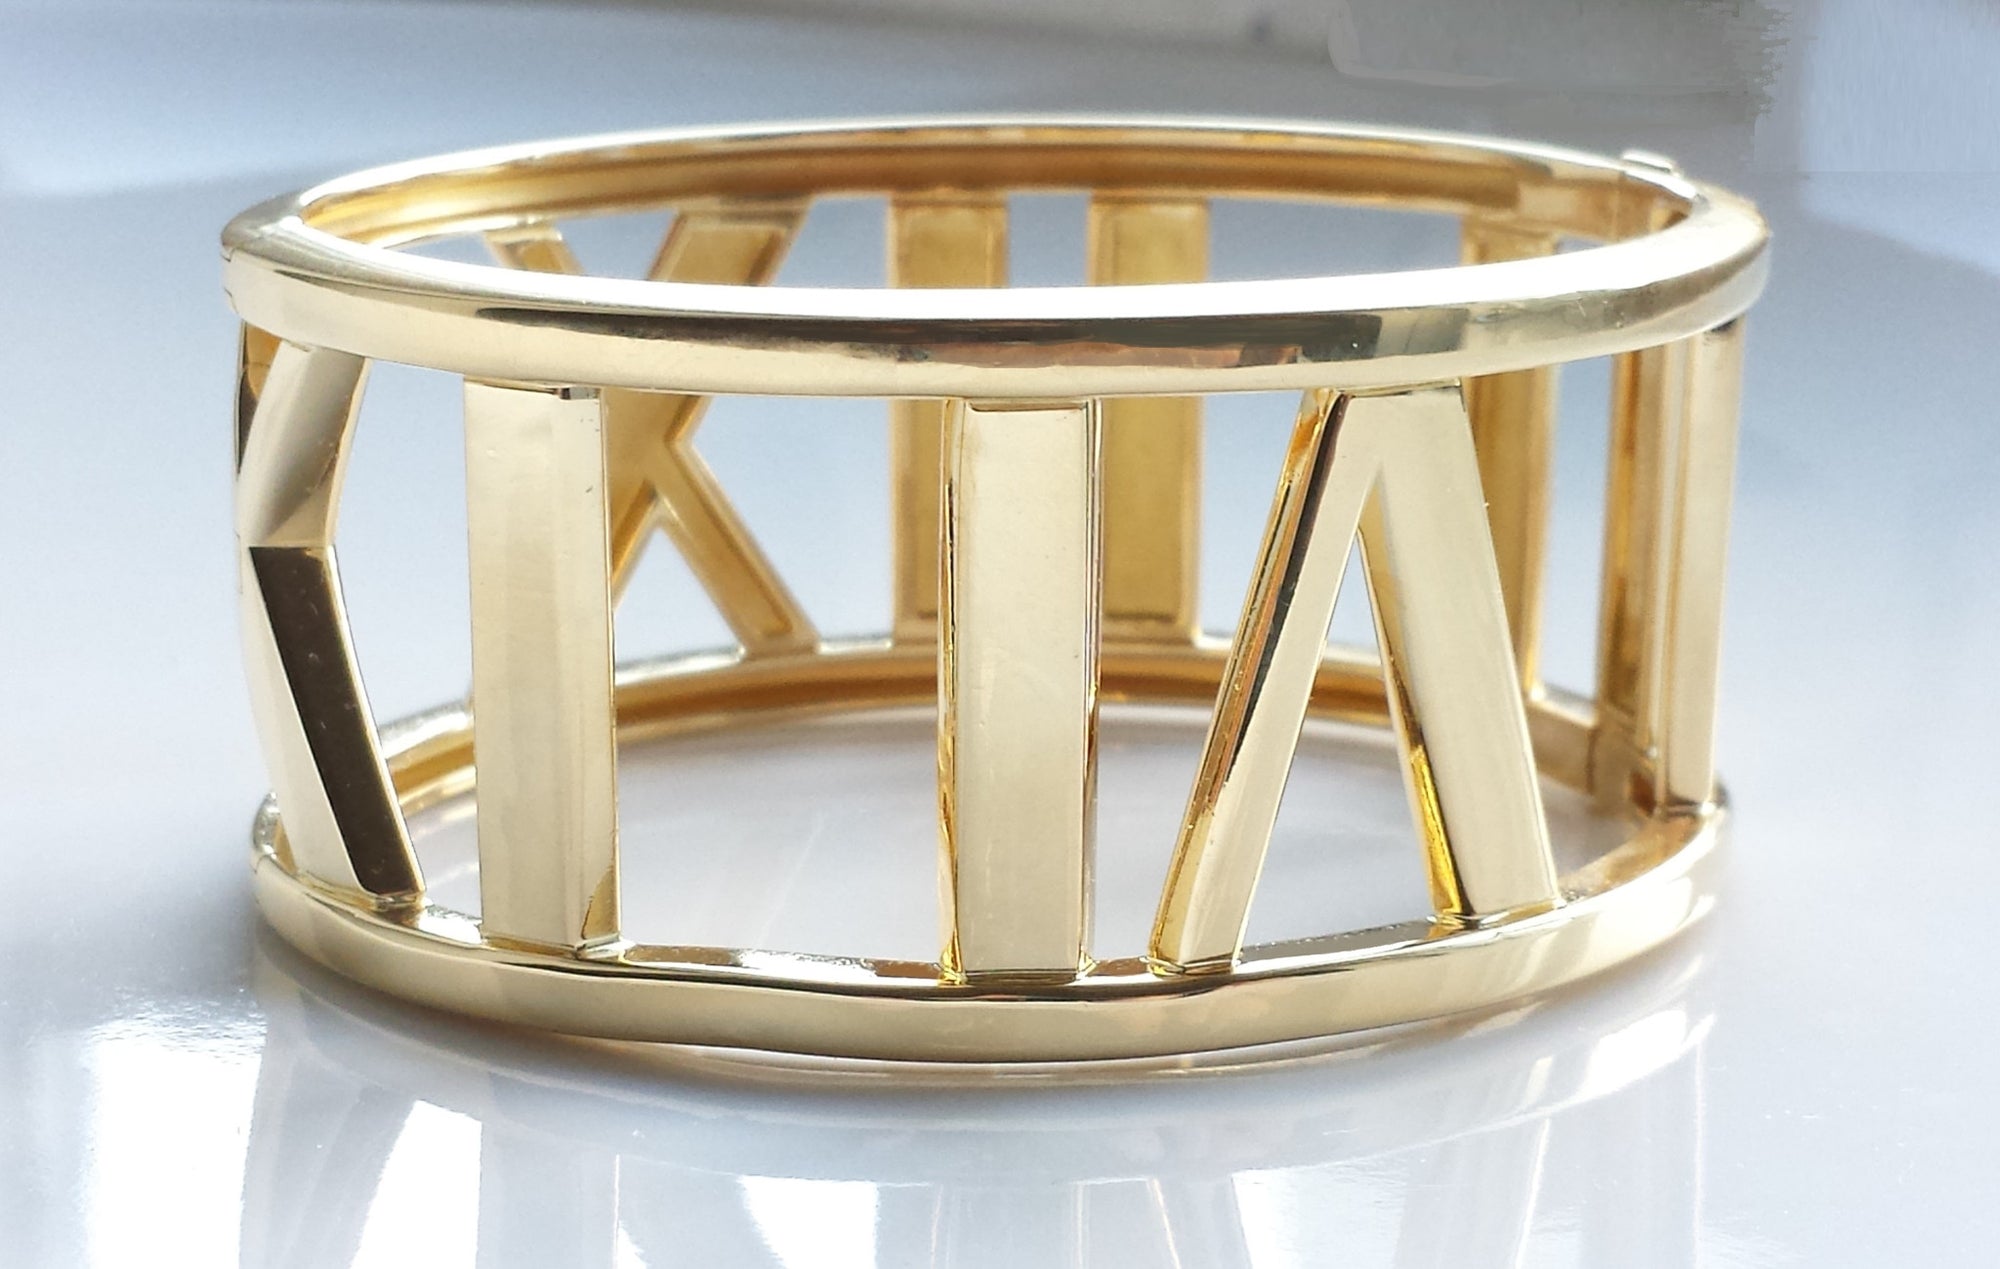 Tiffany & Co. Atlas Wide Bangle / Bracelet in 18k Yellow Gold